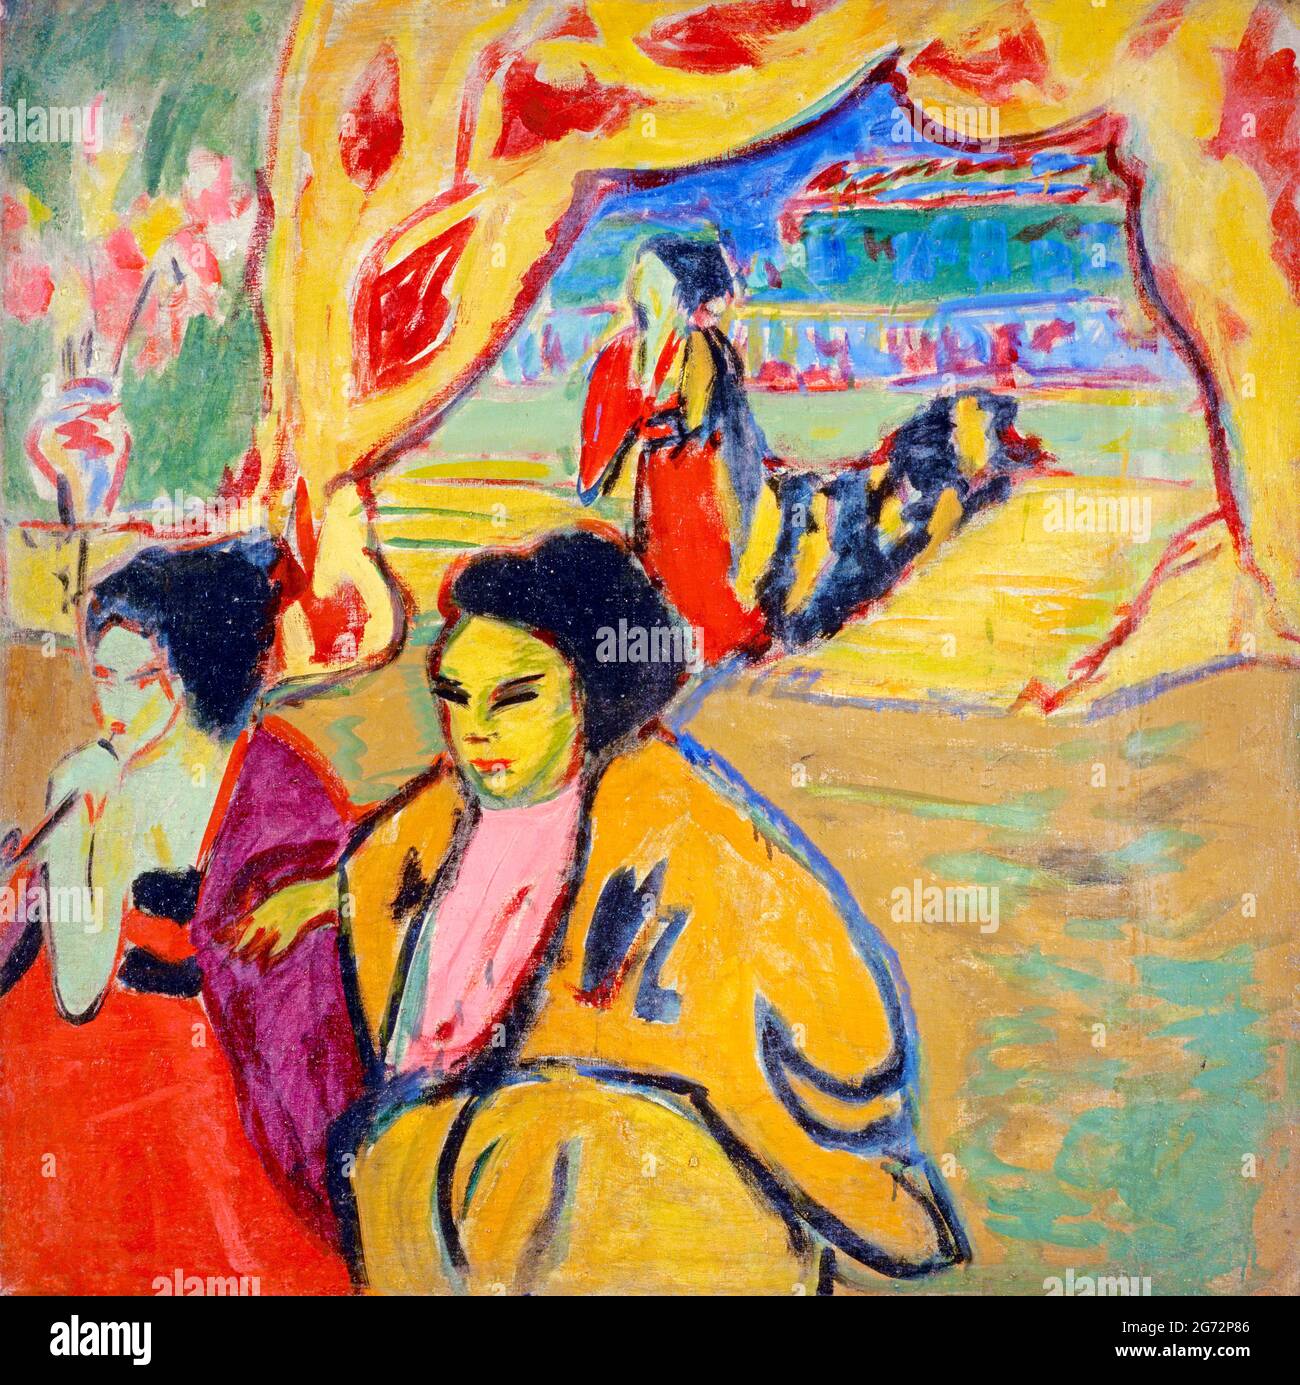 Japanisches Theatre (Teatro giapponese) di Ernst Ludwig Kirchner (1880-1938), olio su tela, 1909 Foto Stock